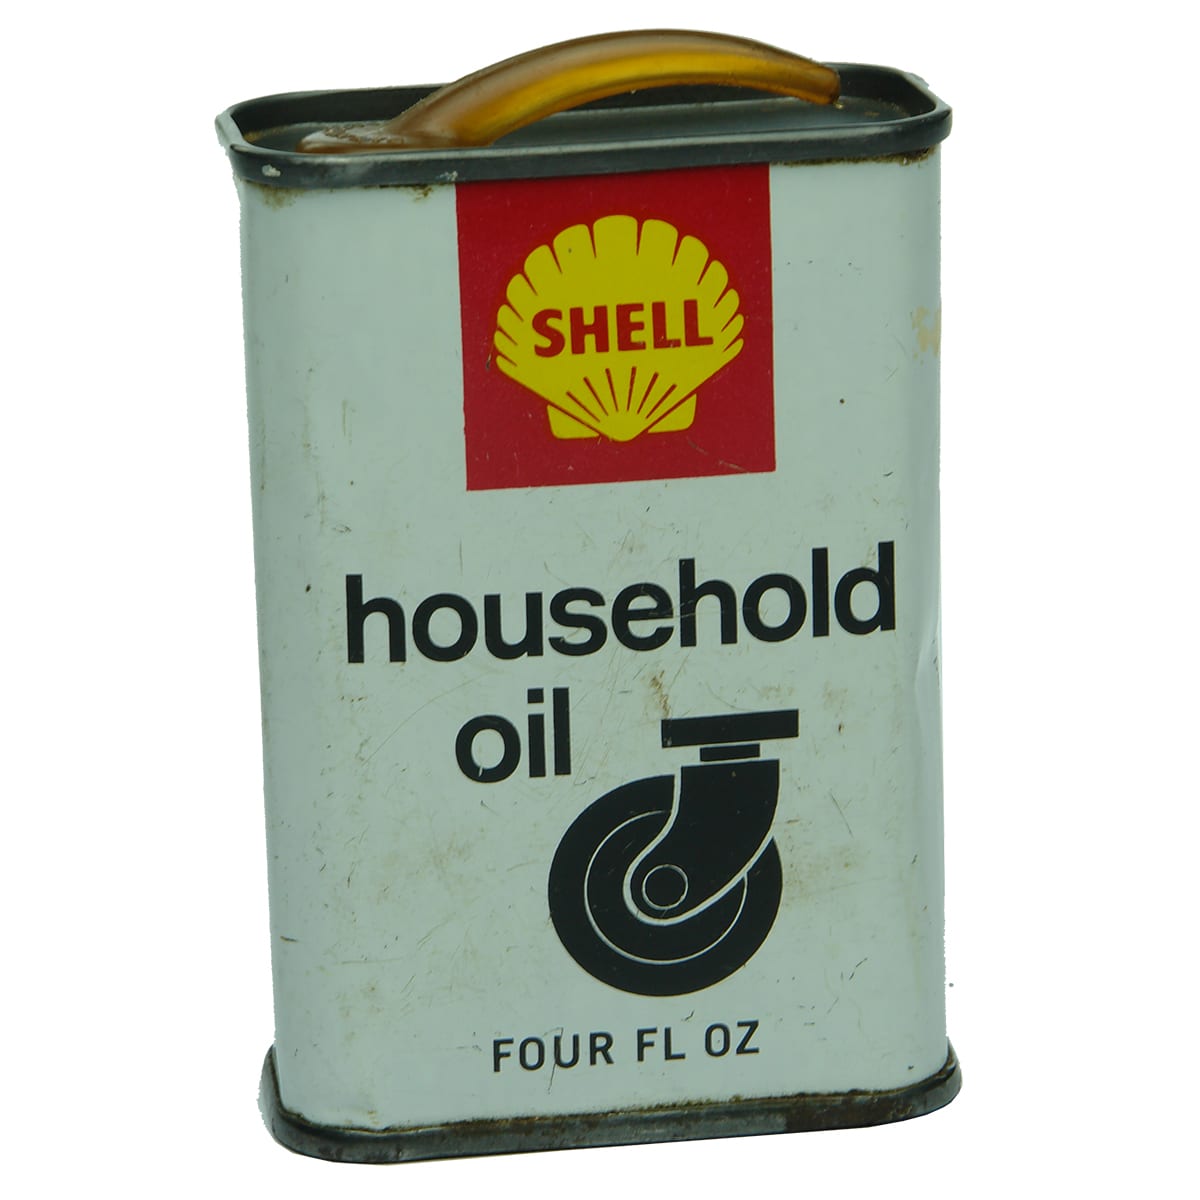 Garagenalia. Shell Household Oil. 4 oz.